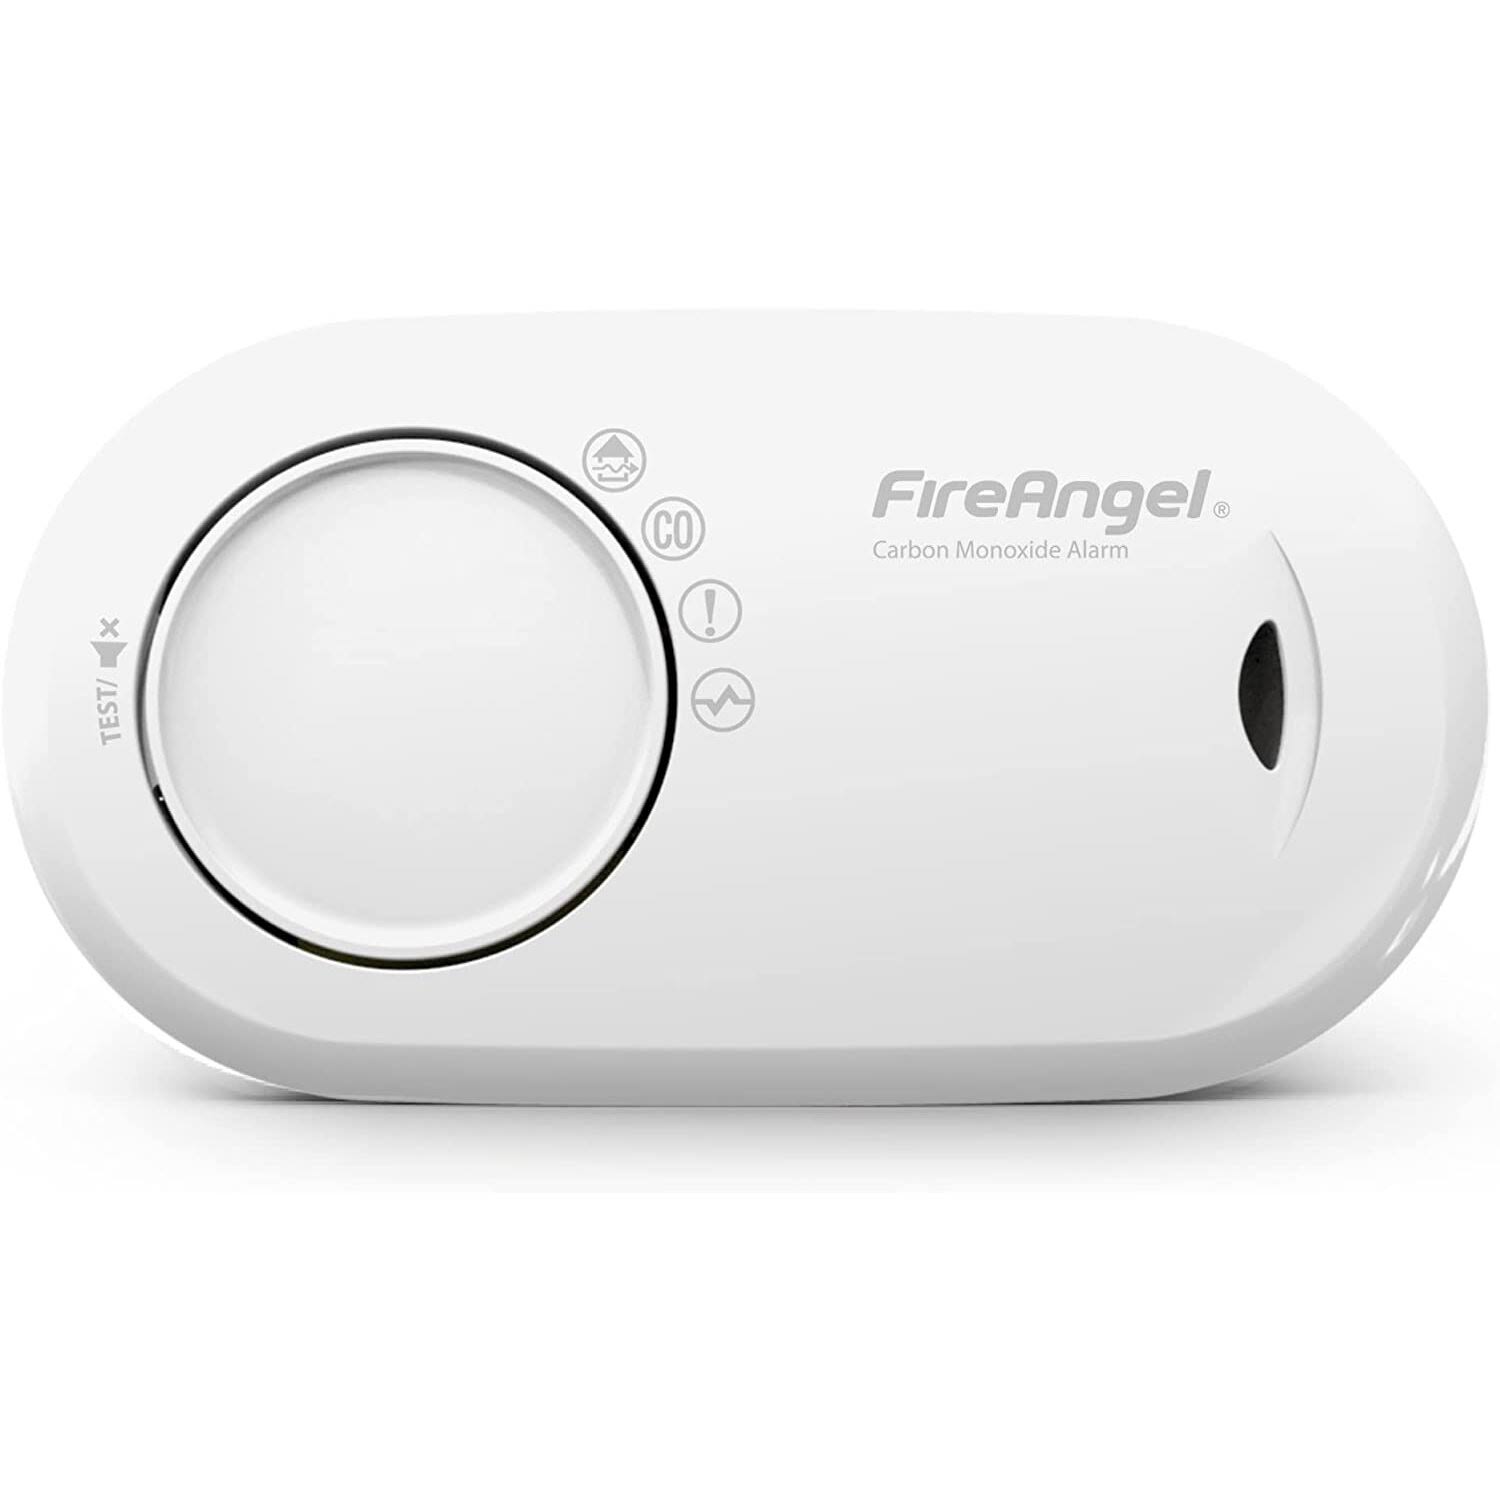 FireAngel Carbon Monoxide Alarm 10 Year